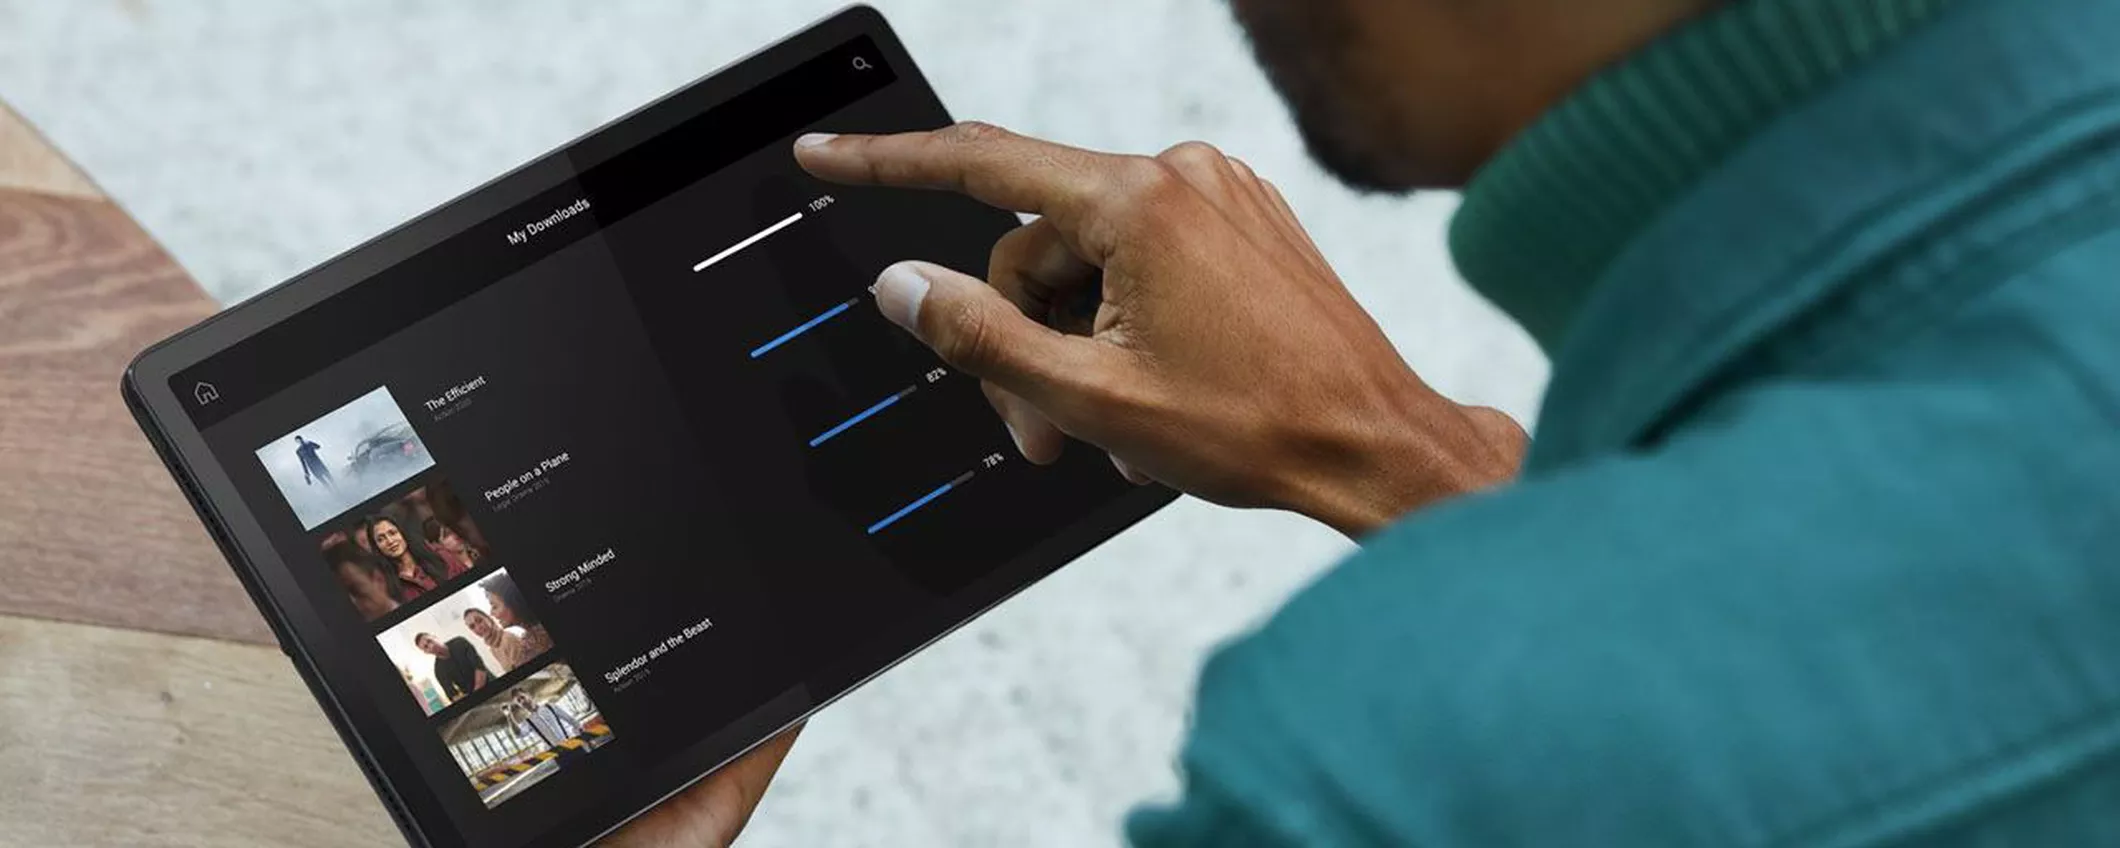 Il tablet Lenovo PIU' INNOVATIVO di sempre a MENO DI 100 EURO (-34%)